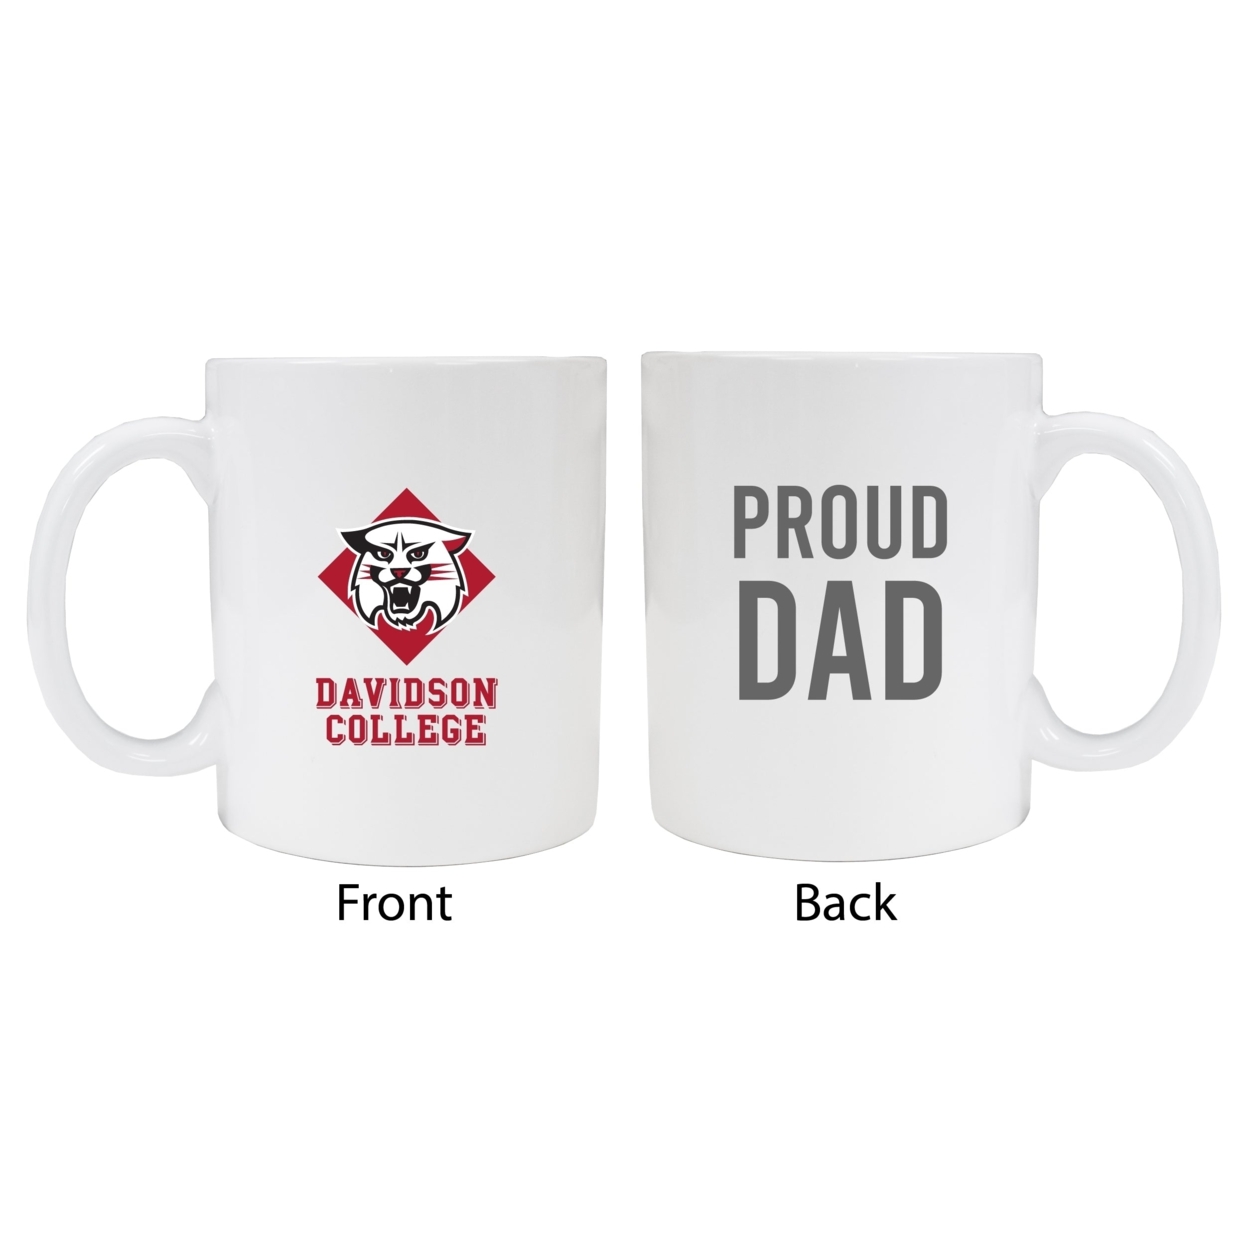 Davidson College Proud Dad Ceramic Coffee Mug - White